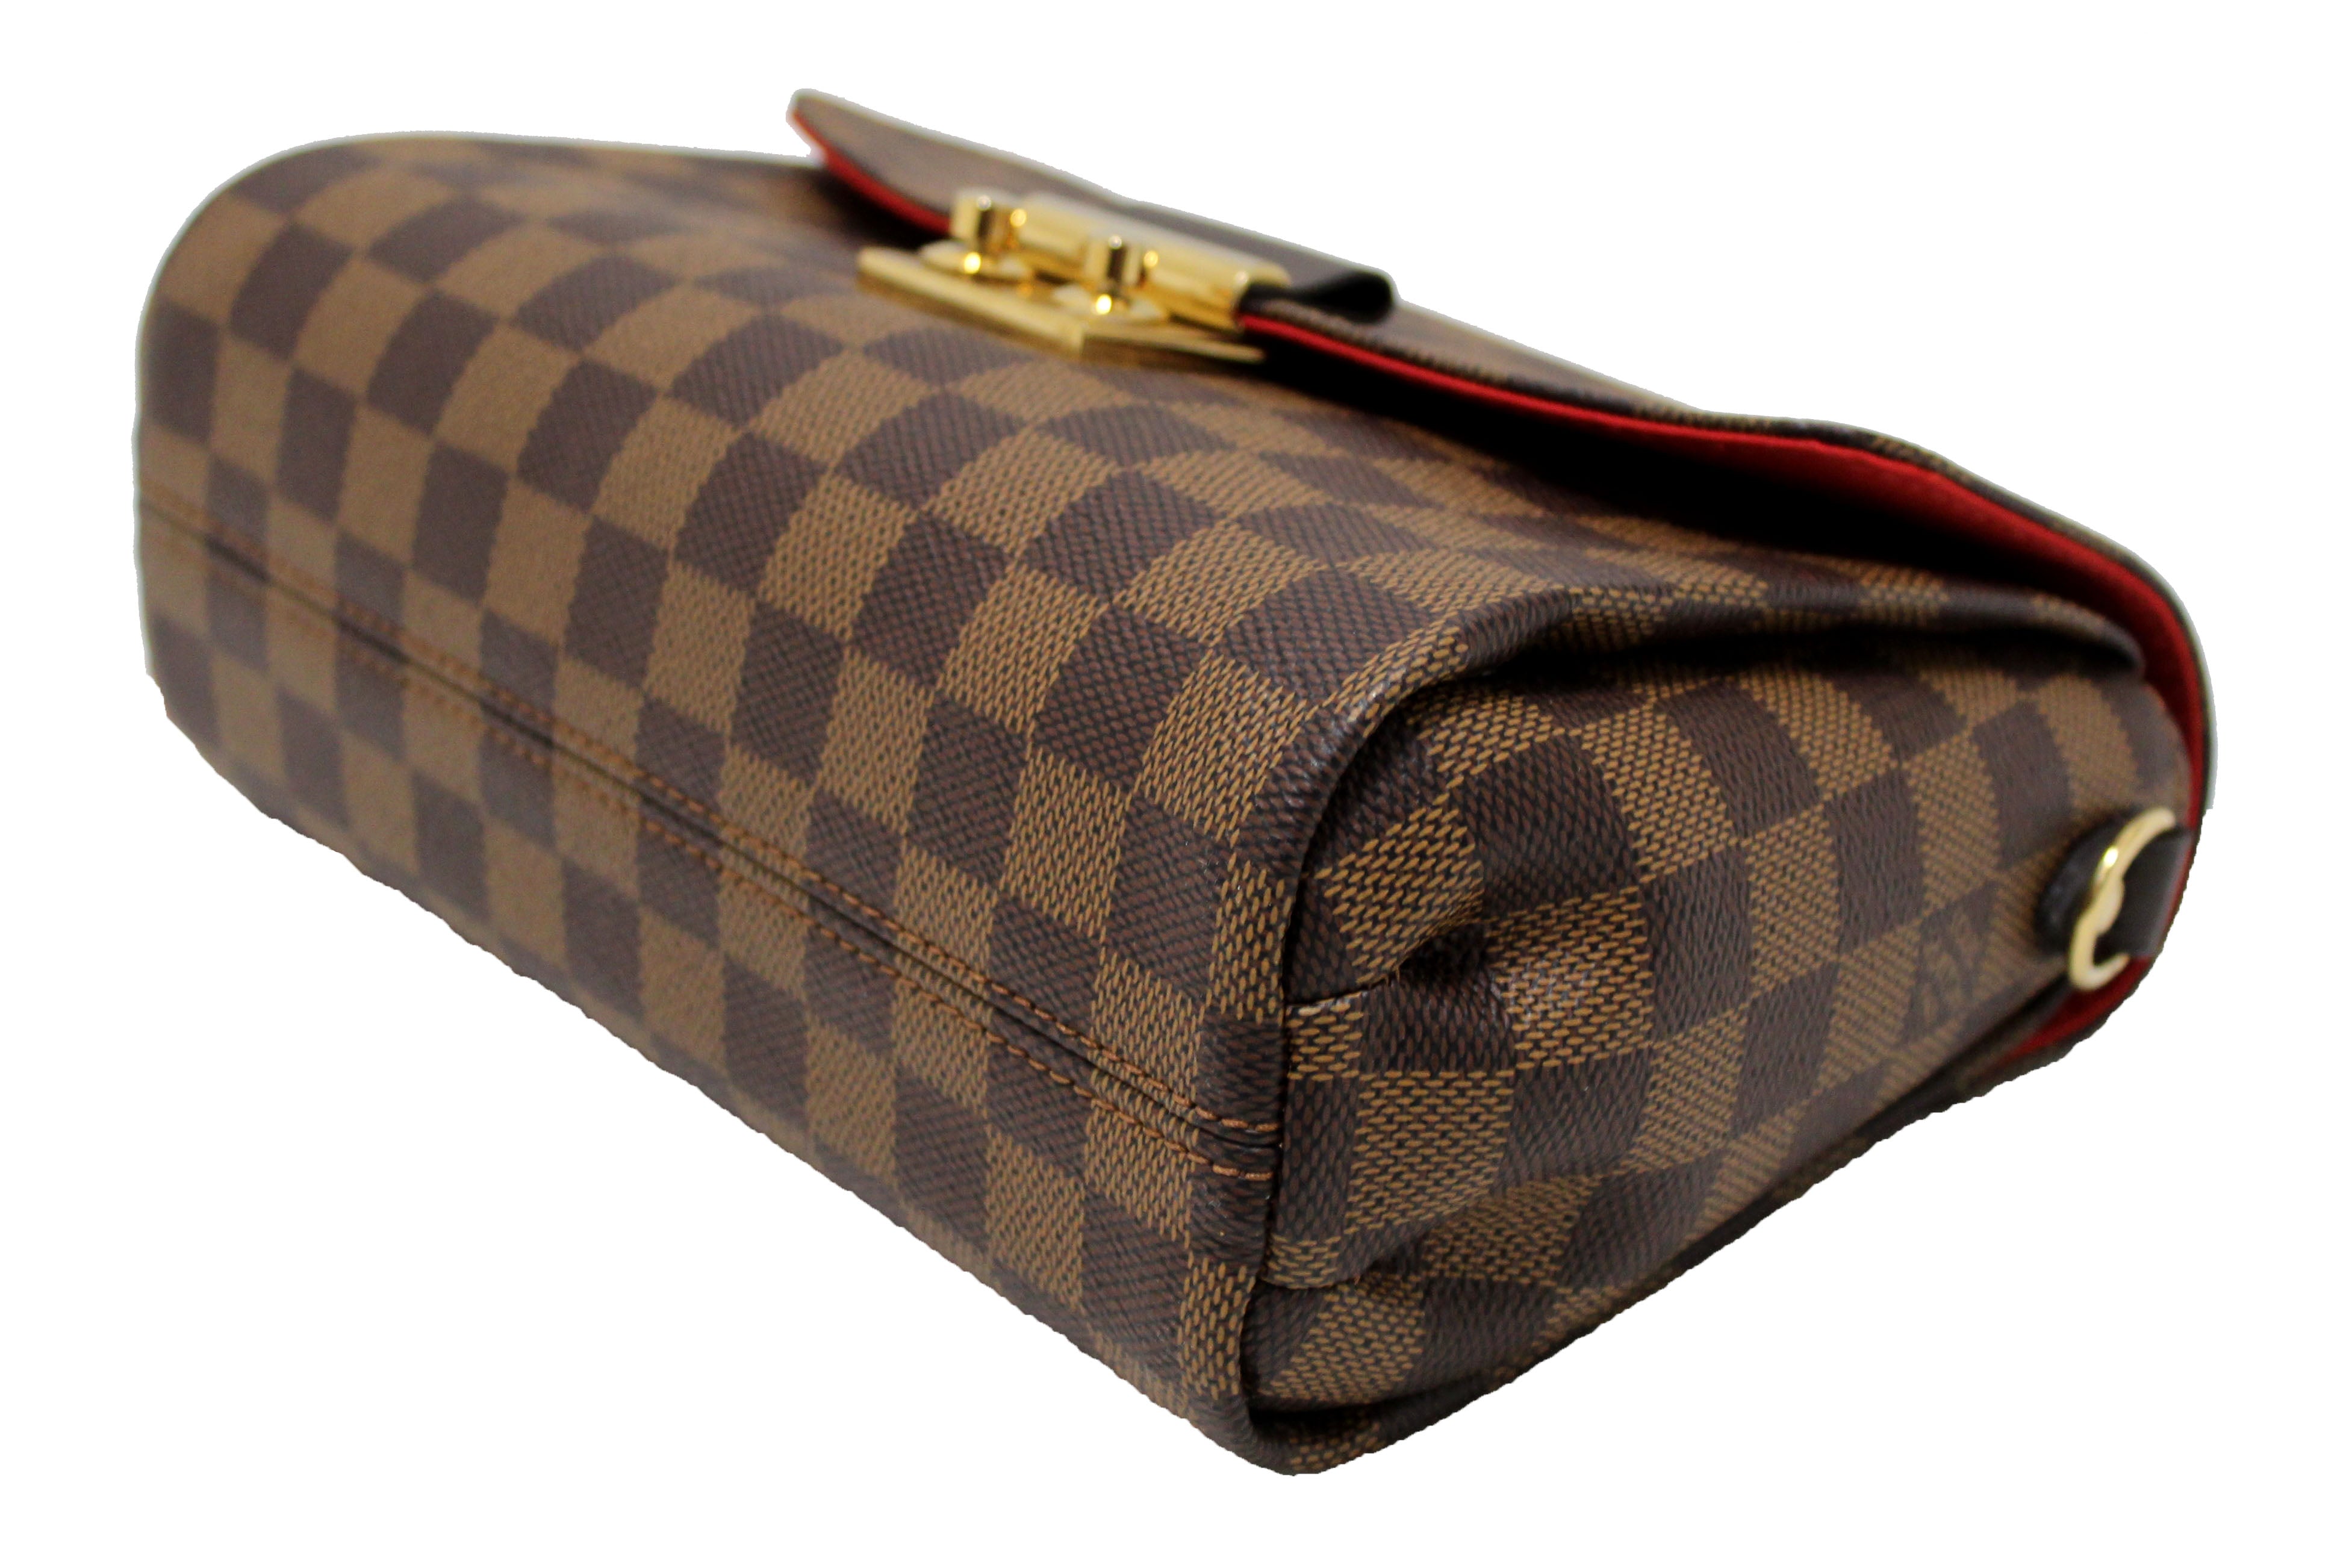 Authentic Louis Vuitton Damier Saint Louis Clutch Hand Bag Purse